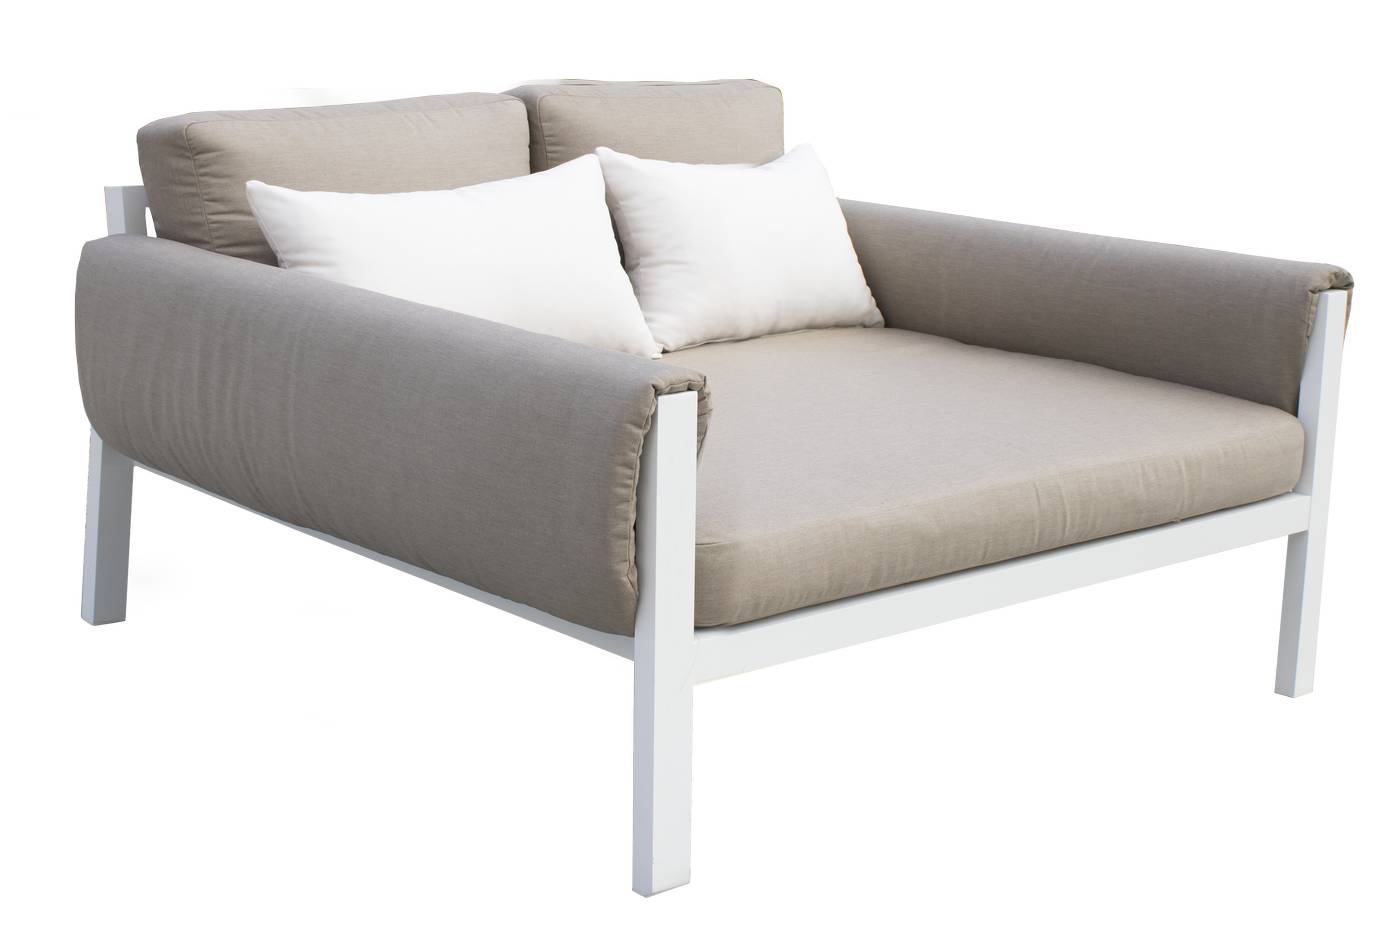 Sofá/cama 2 plazas, con opción de cojines en los brazos. En color: blanco, antracita, marrón, champagne o plata.